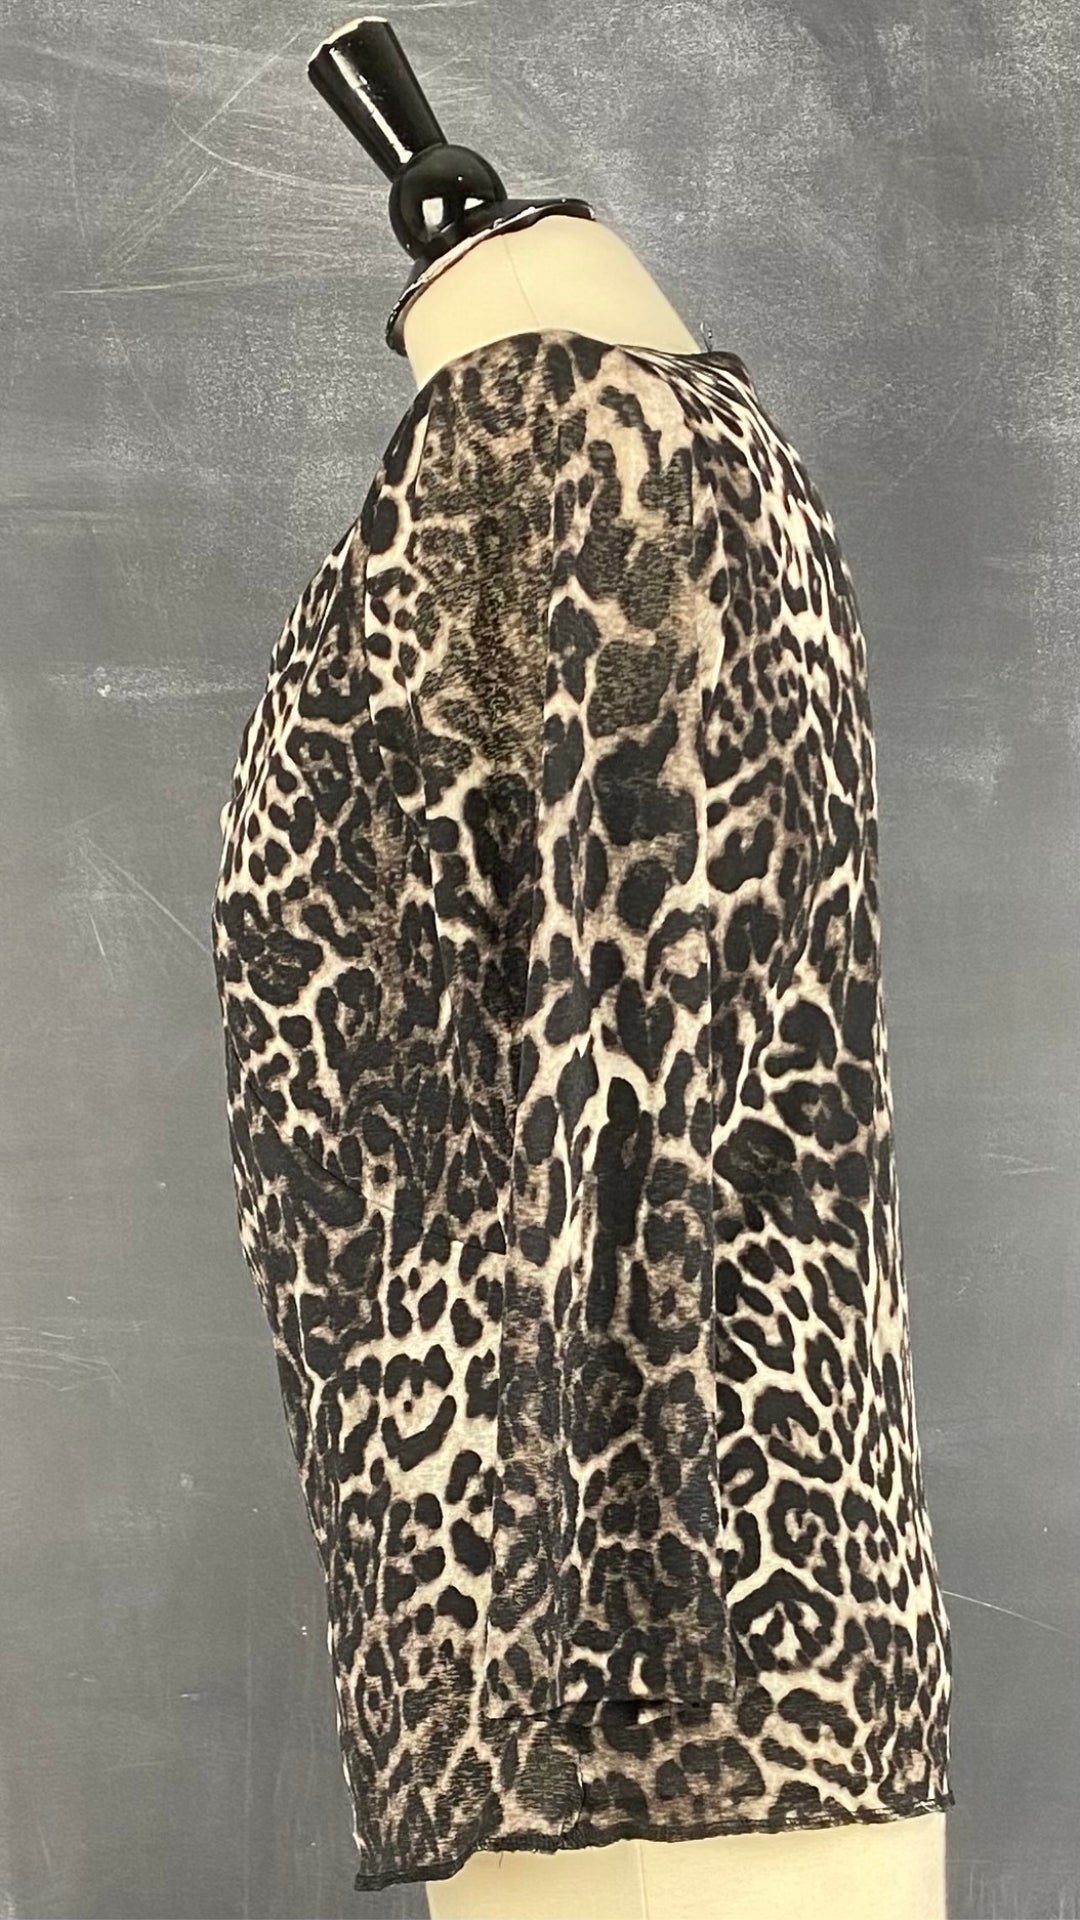 Chandail léger à motif léopard Jones New York, taille small. Vue de côté.